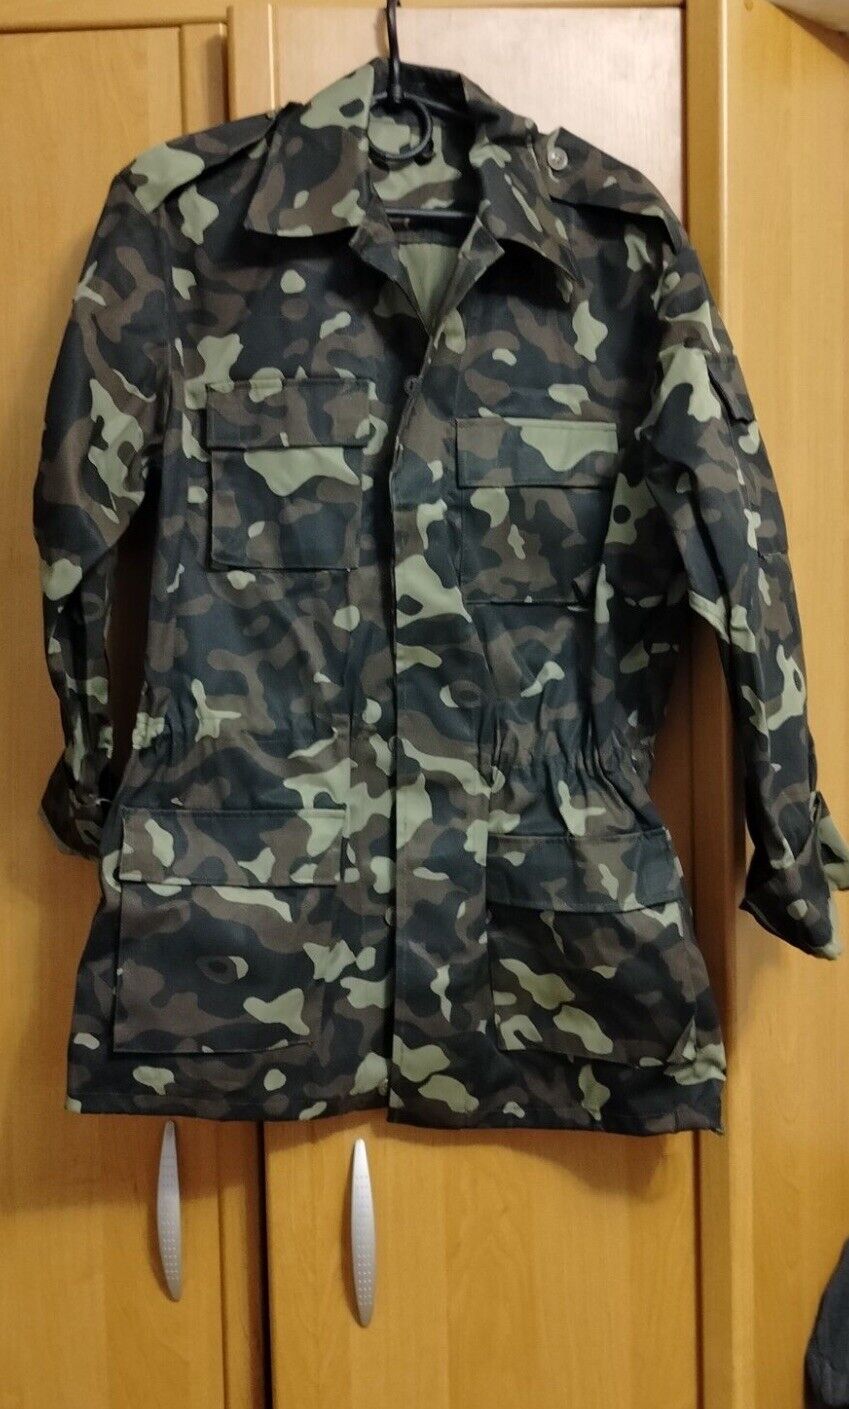 Unissued Ukrainian Army Dubok Camouflage Uniform Jacket and Trousers Size S